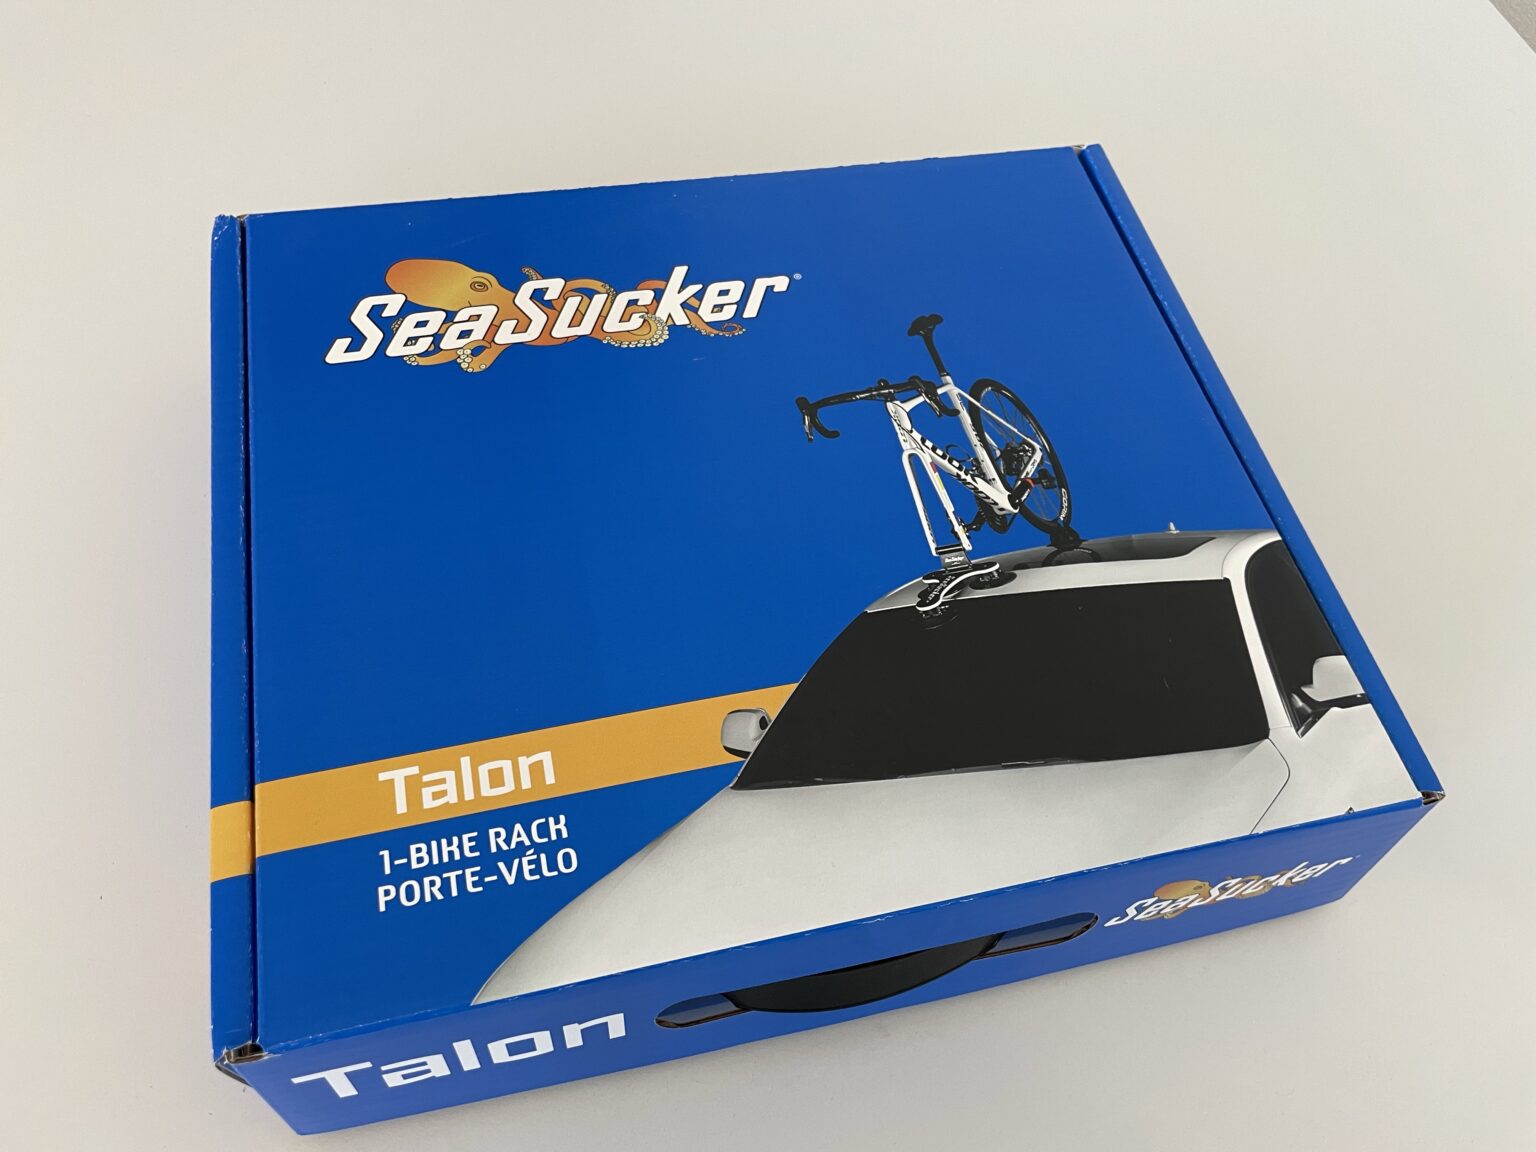 SeaSucker Unterdruck Fahrradträger für 1 Fahrrad (Talon Rack - 1 Bike) - Altenburg-Garage AG 1